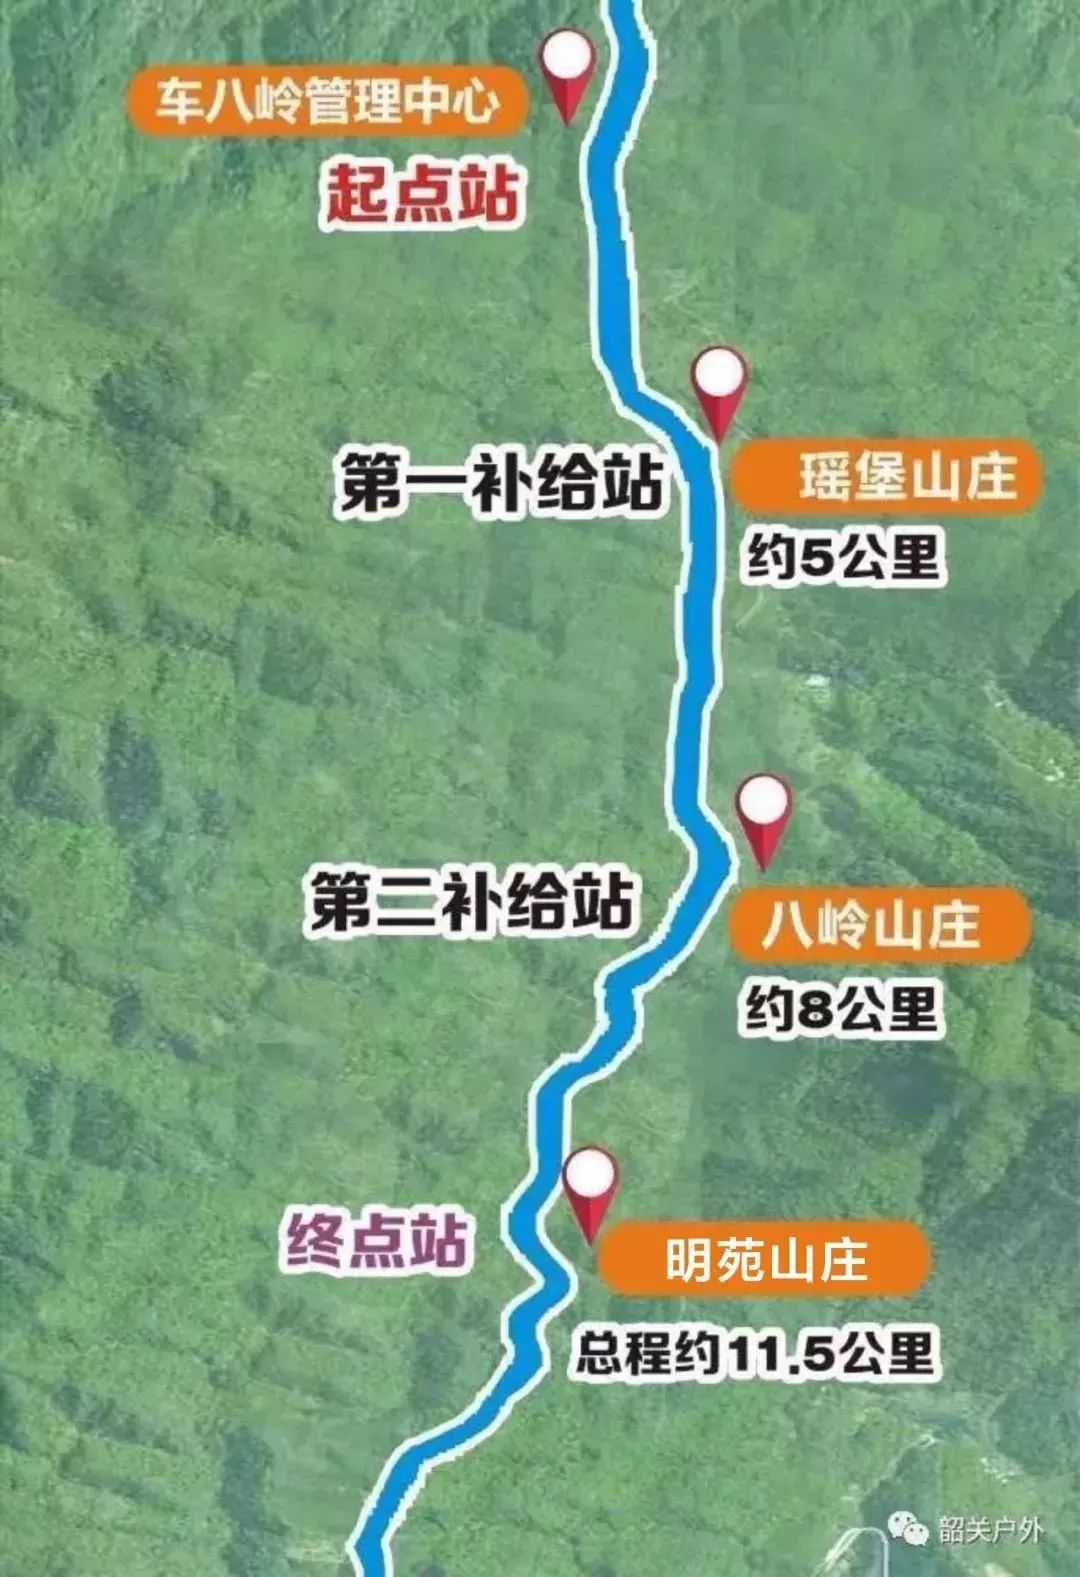 29 行程路线图 组织架构 指导单位: 始兴县旅游局 主办单位: 始兴县司图片